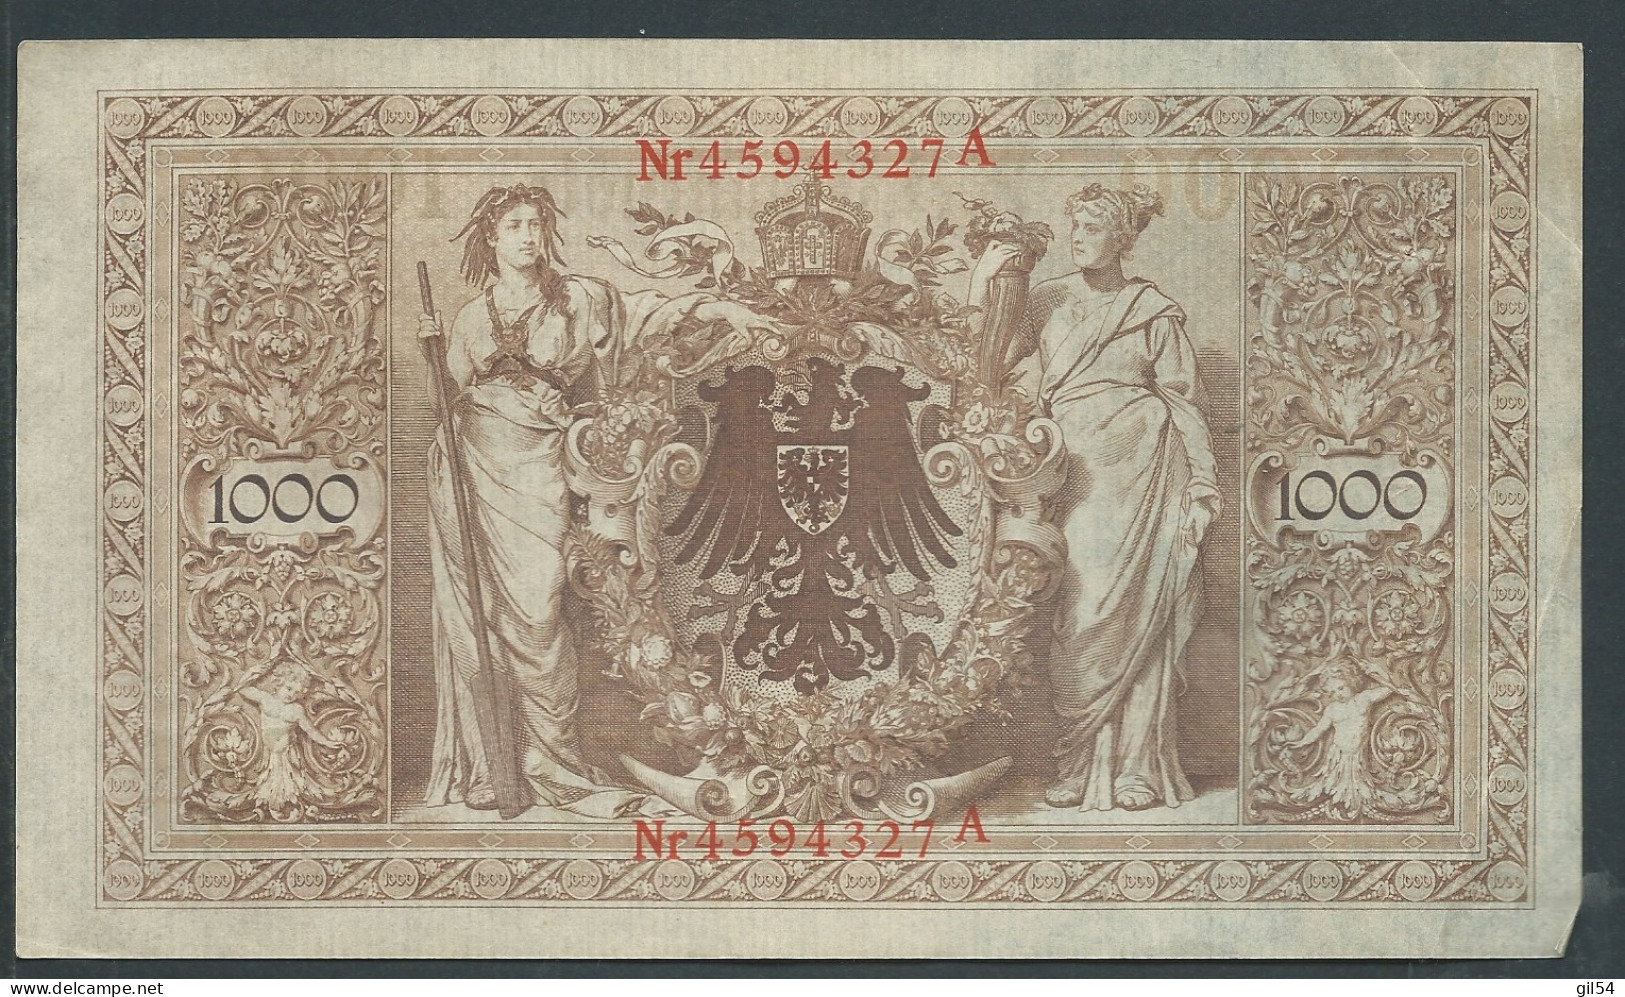 21 Avril 1910 - Billet 1000 Mark - Allemagne , - Nr 4594327 A - Laura 10612 - 1.000 Mark